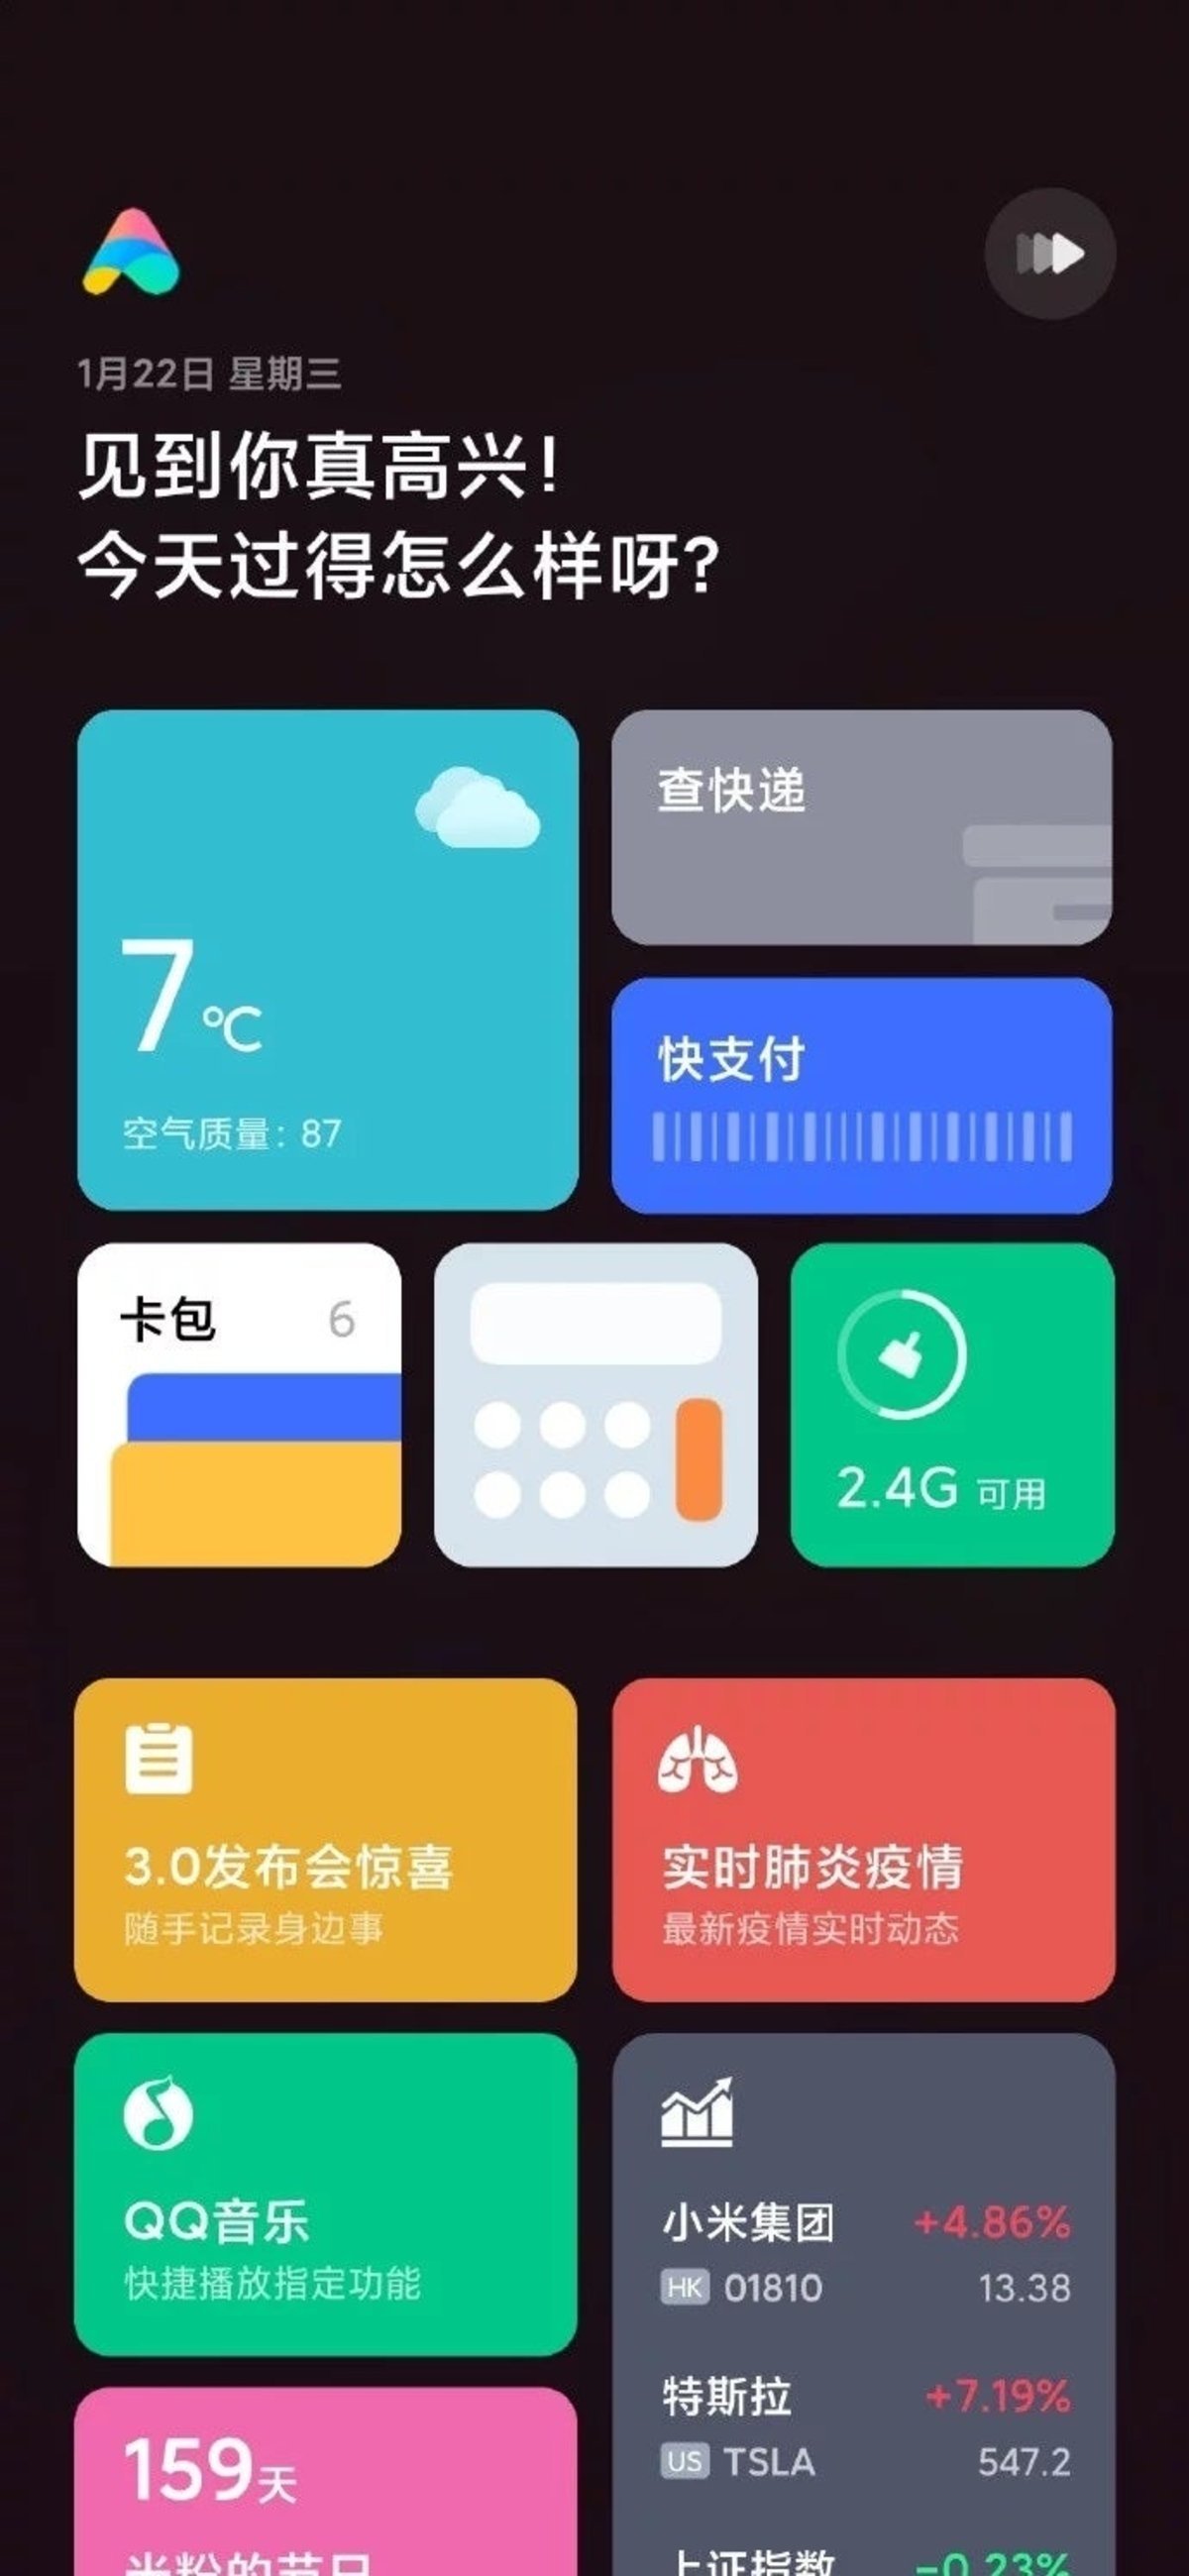 Xiaomi ayudará informando a los usuarios en la pandemia del coronavirus